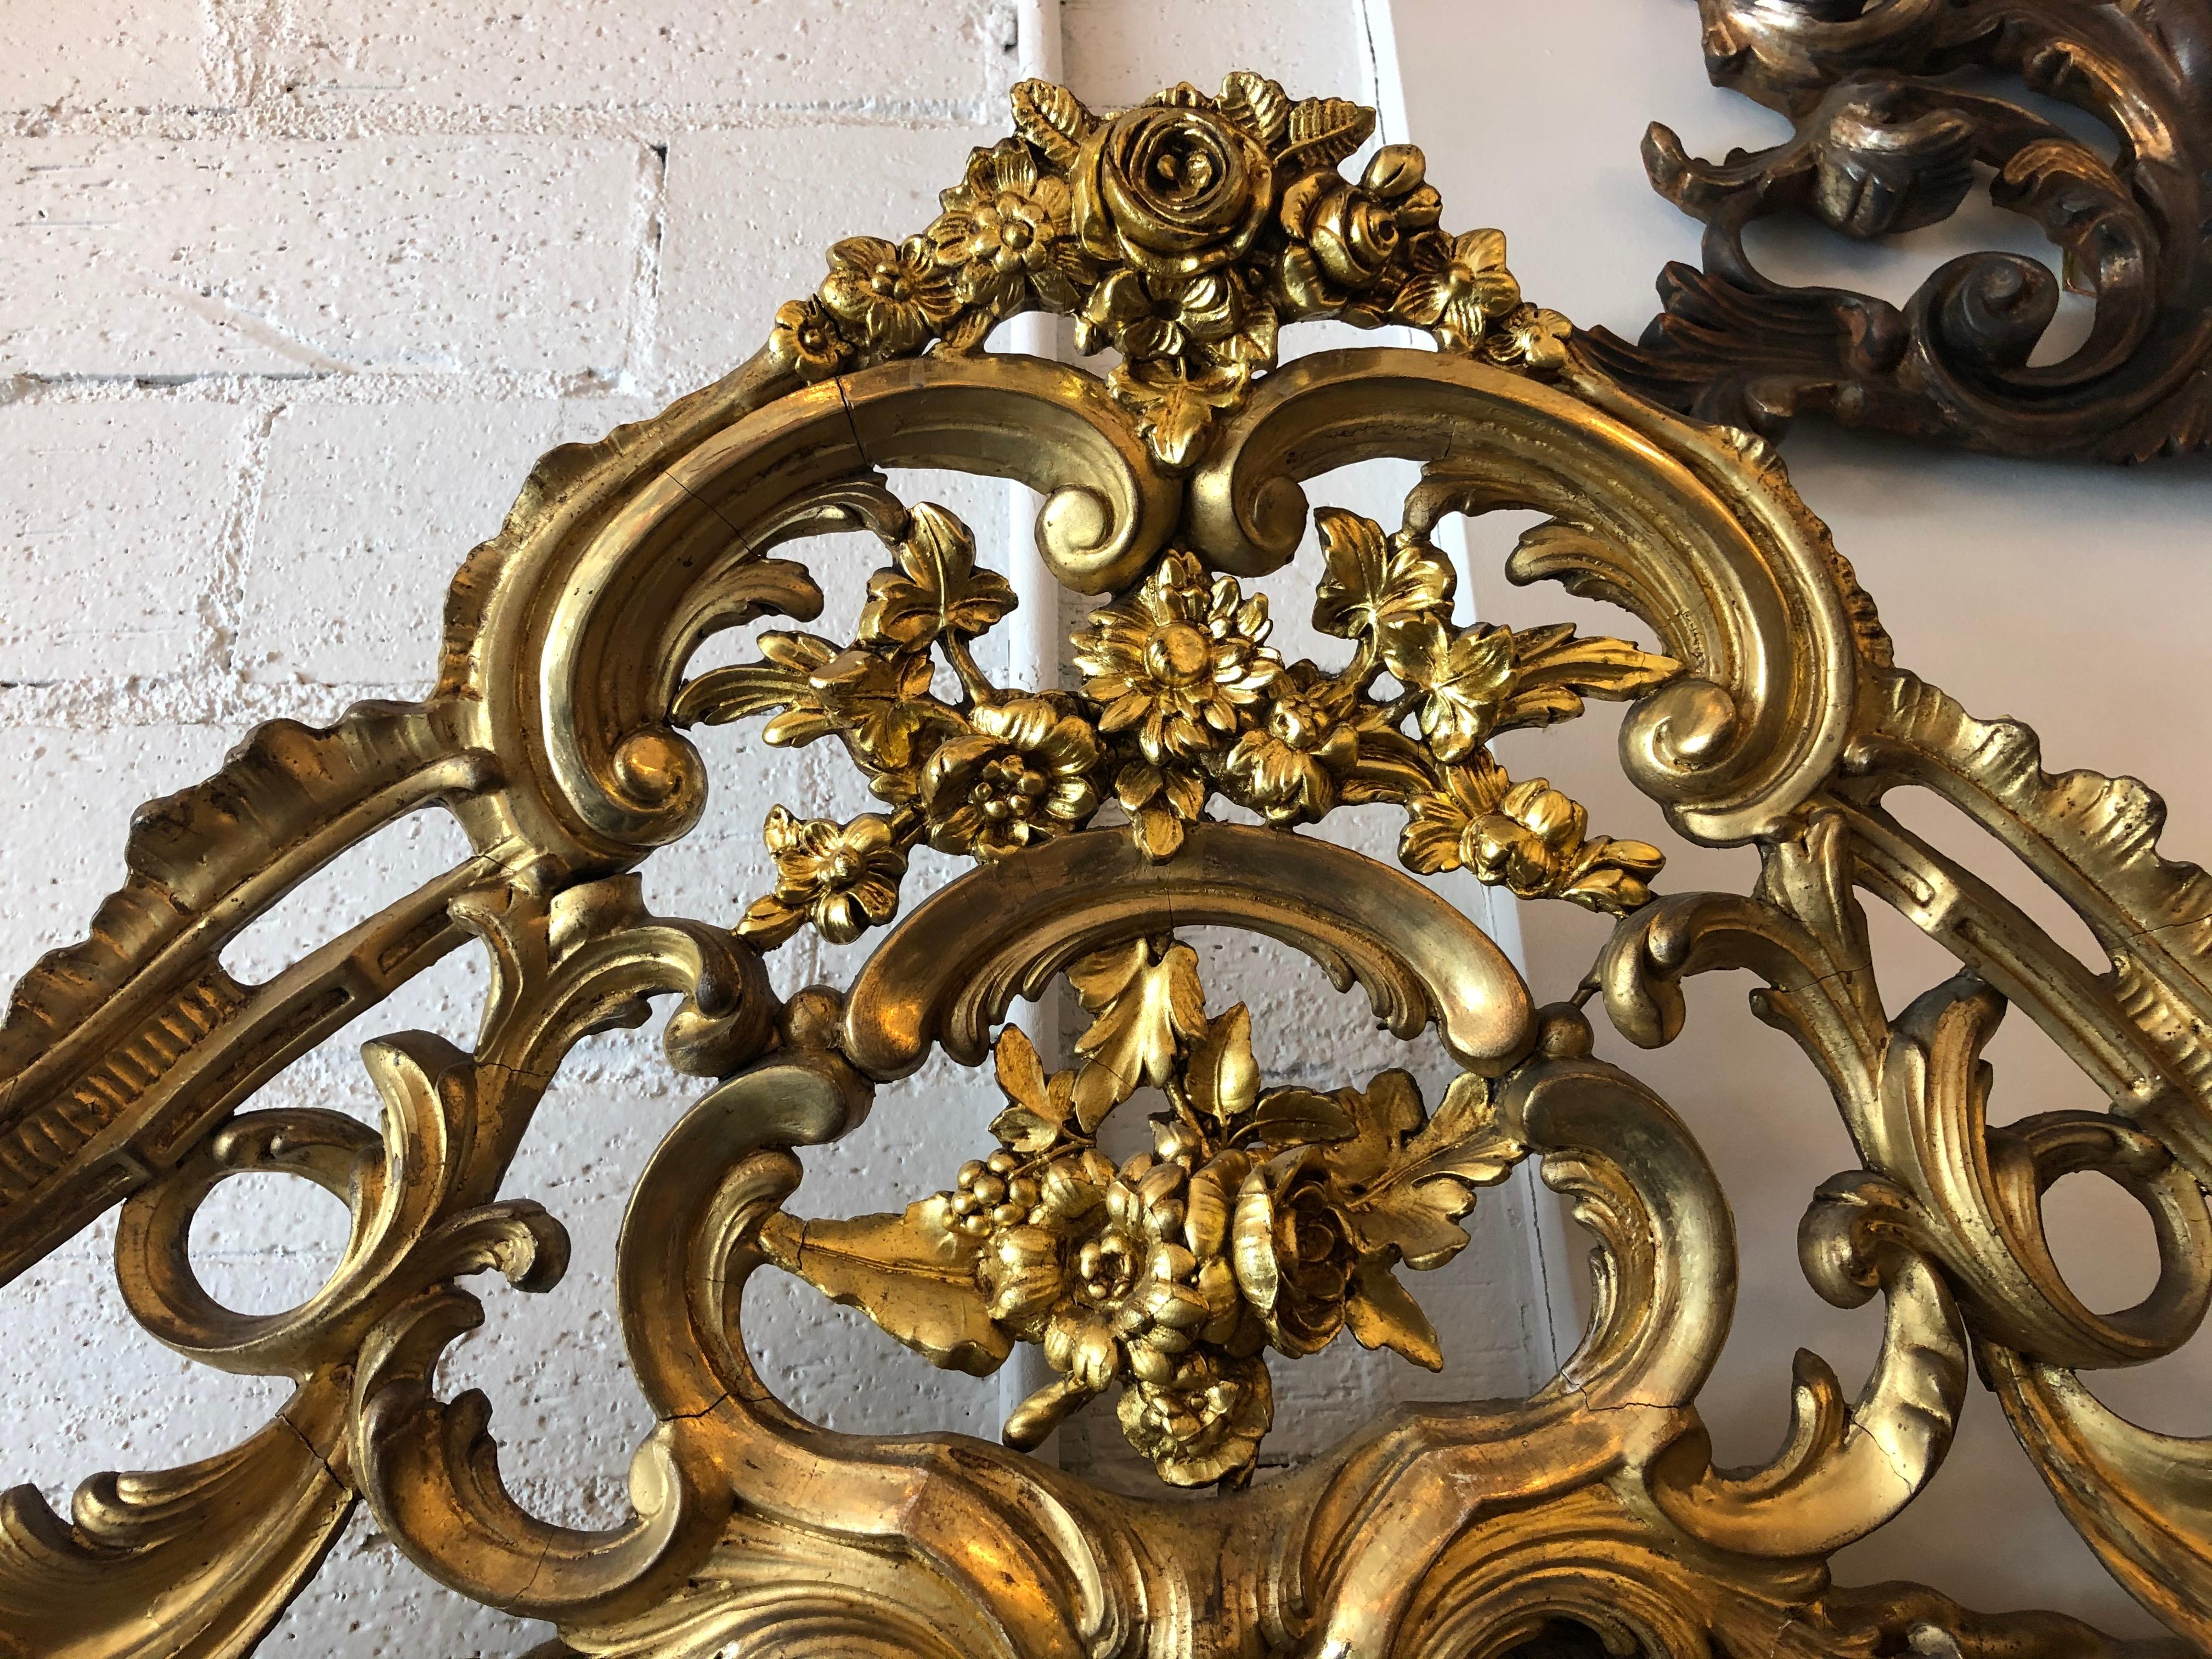 Französischer geschnitzter und vergoldeter Spiegel aus der Zeit Napoleons III., 19. Jh. Die flache Spiegelplatte wird von einem kunstvoll geschnitzten, blattförmigen Rahmen eingefasst, der von geschnitzten floralen Akzenten flankiert wird.